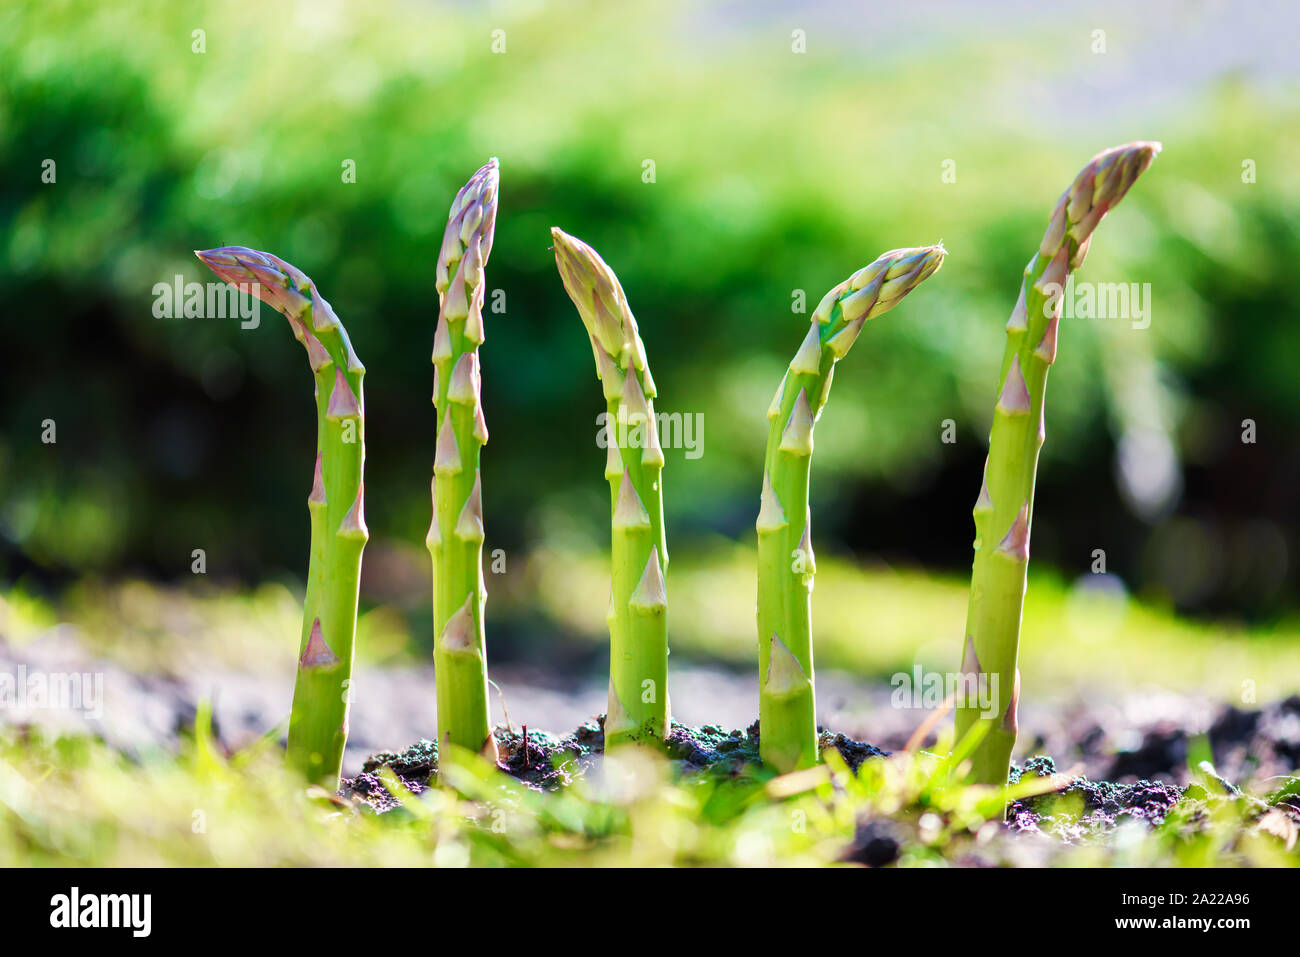 Junge grüne Spargel sprießen im Garten Wachstum Nahaufnahme. Essen Fotografie Stockfoto